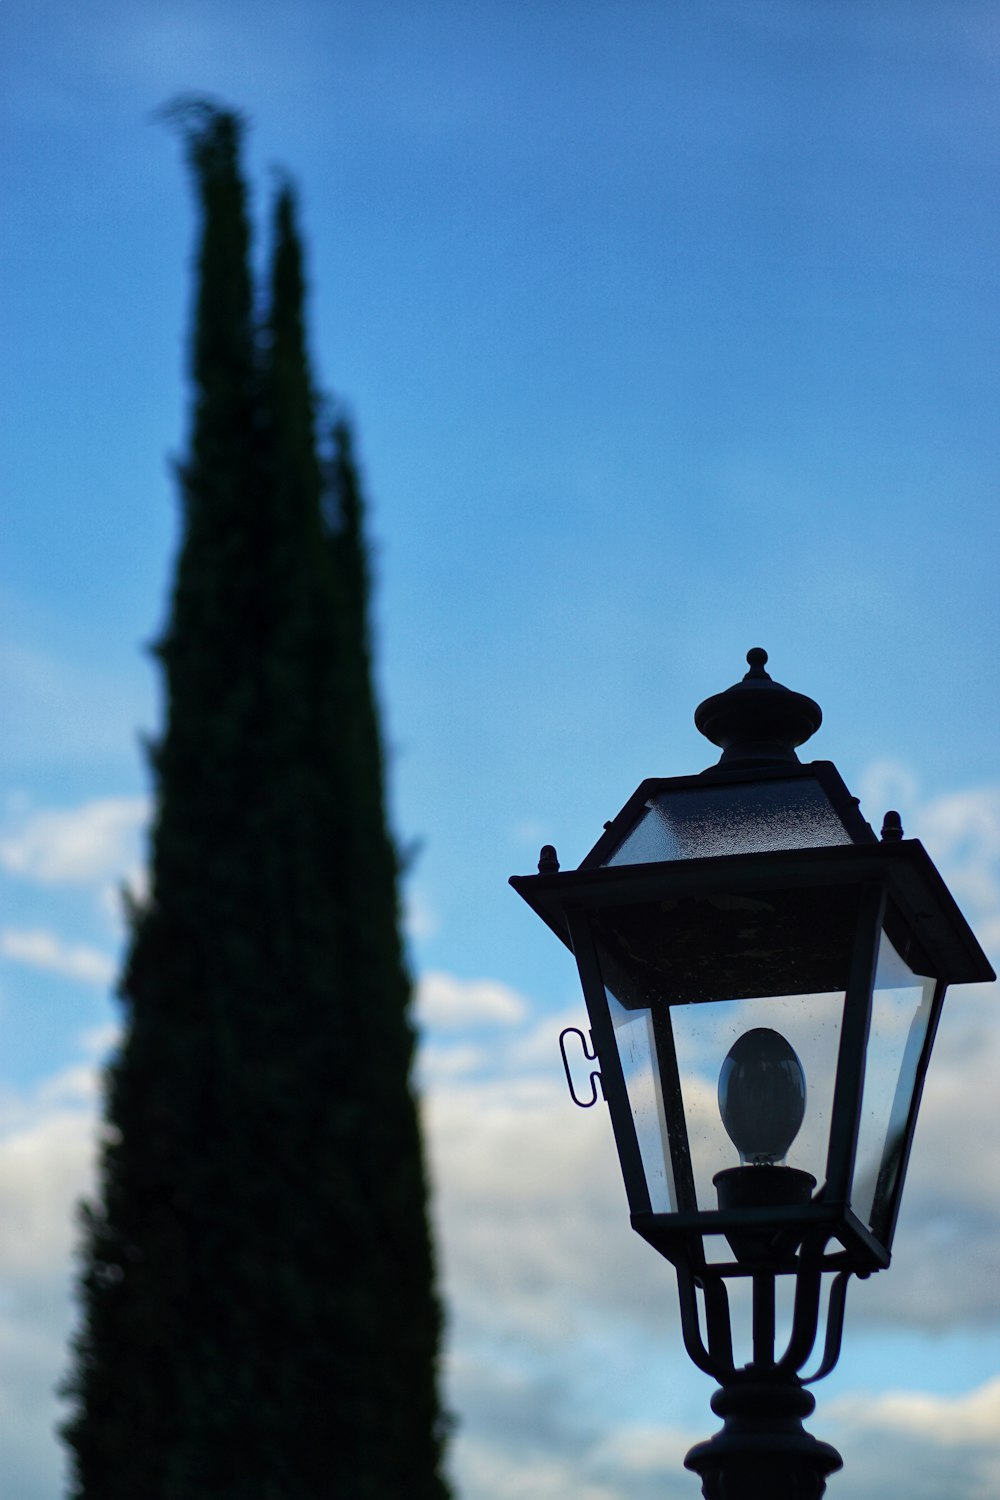 black lantern hanging on tree during daytime